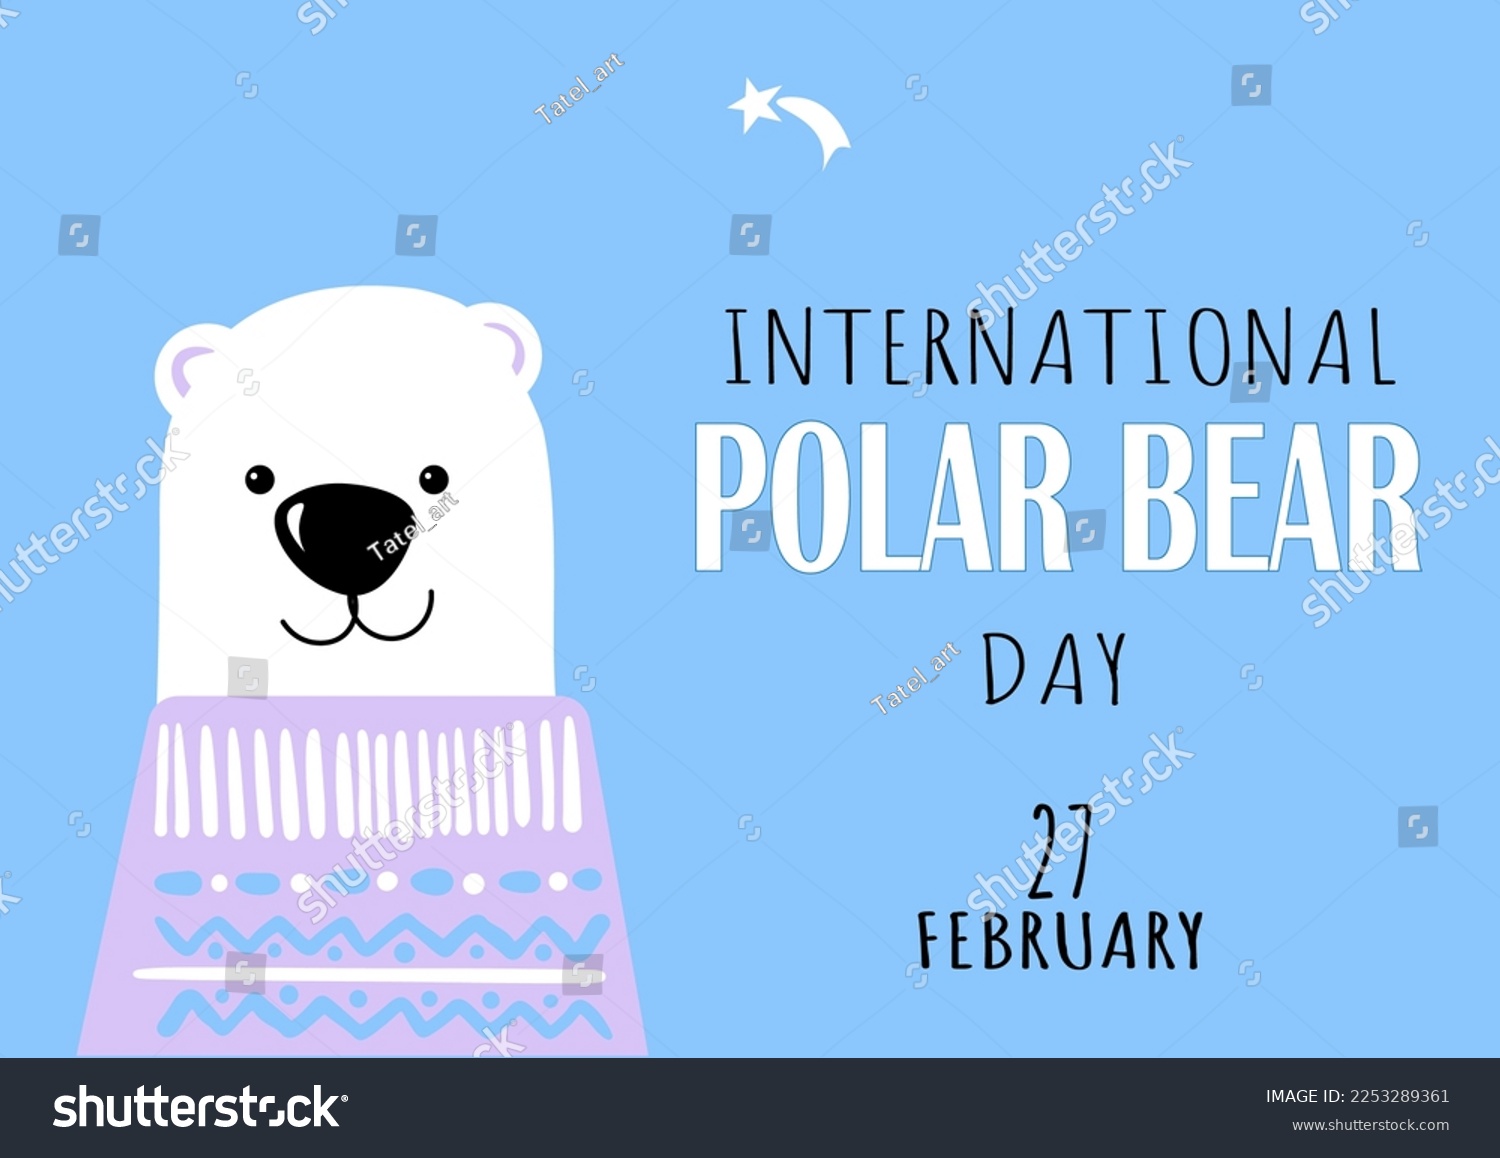 SVG of International Polar Bear Day vector. Big polar bear icon vector isolated on a blue background. Polar Bear Day Poster, February 27. Cute polar bears in sweaters. svg